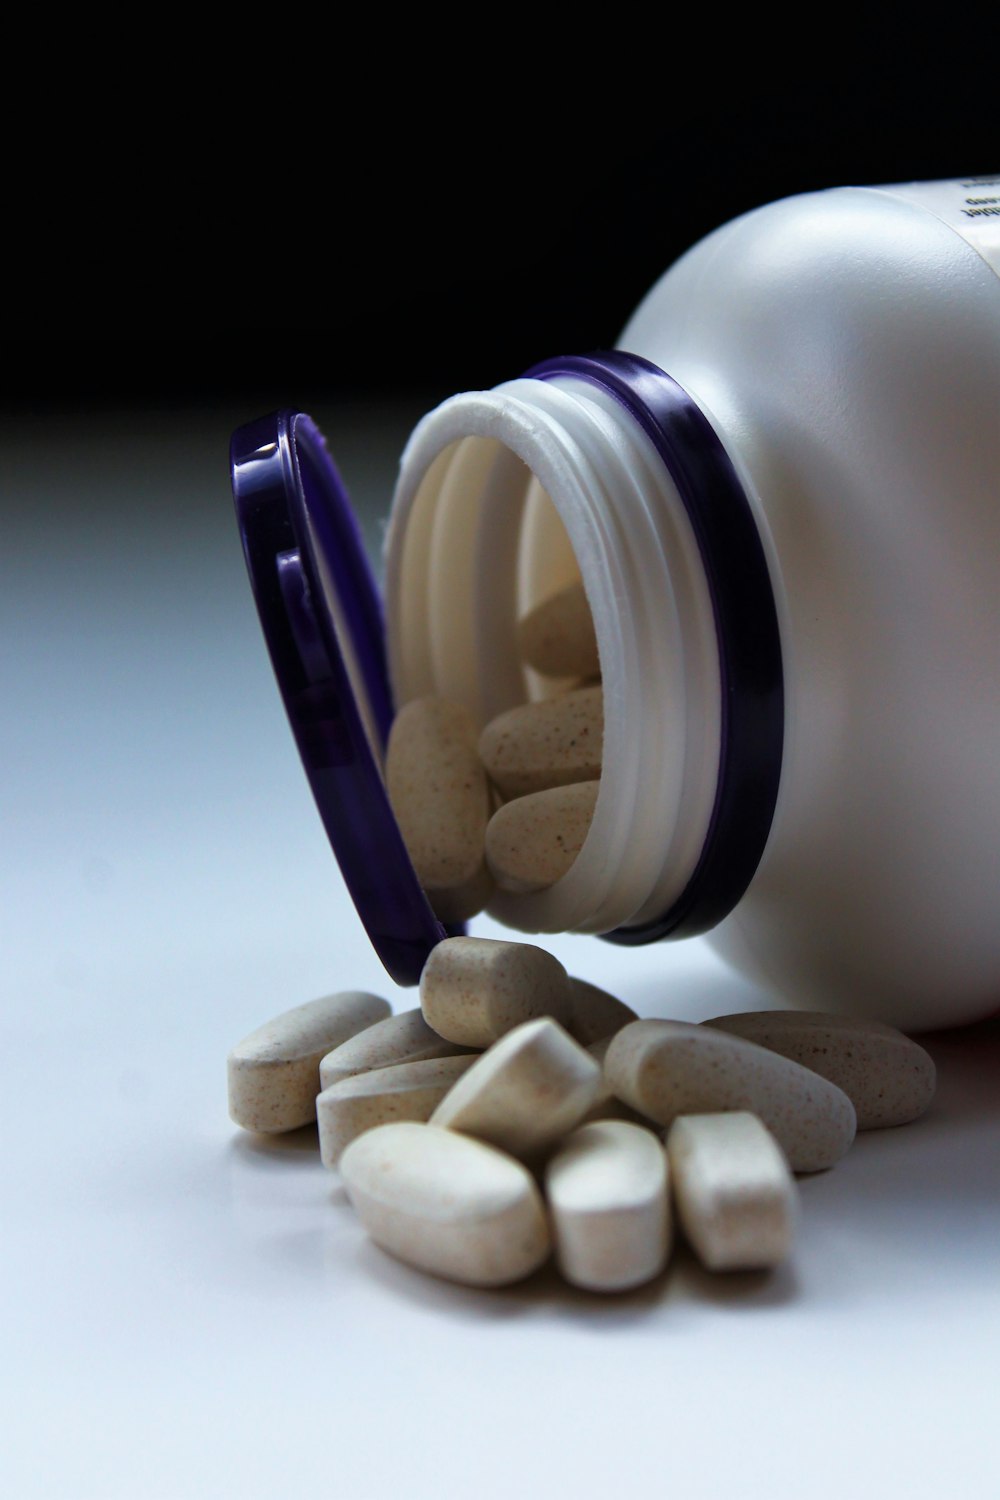 pillole di farmaci bianche ovali